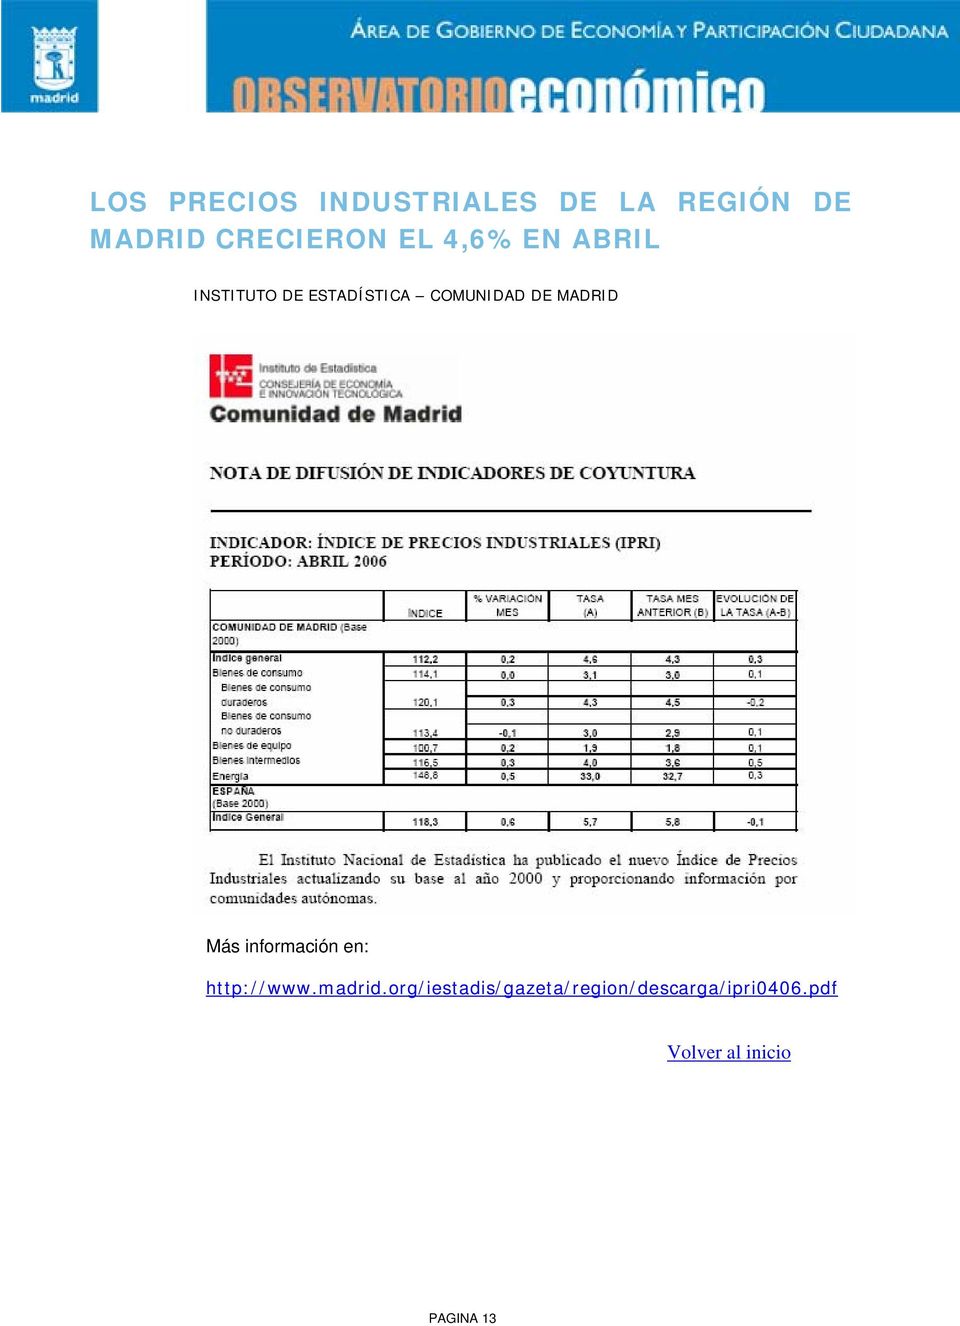 MADRID Más información en: http://www.madrid.